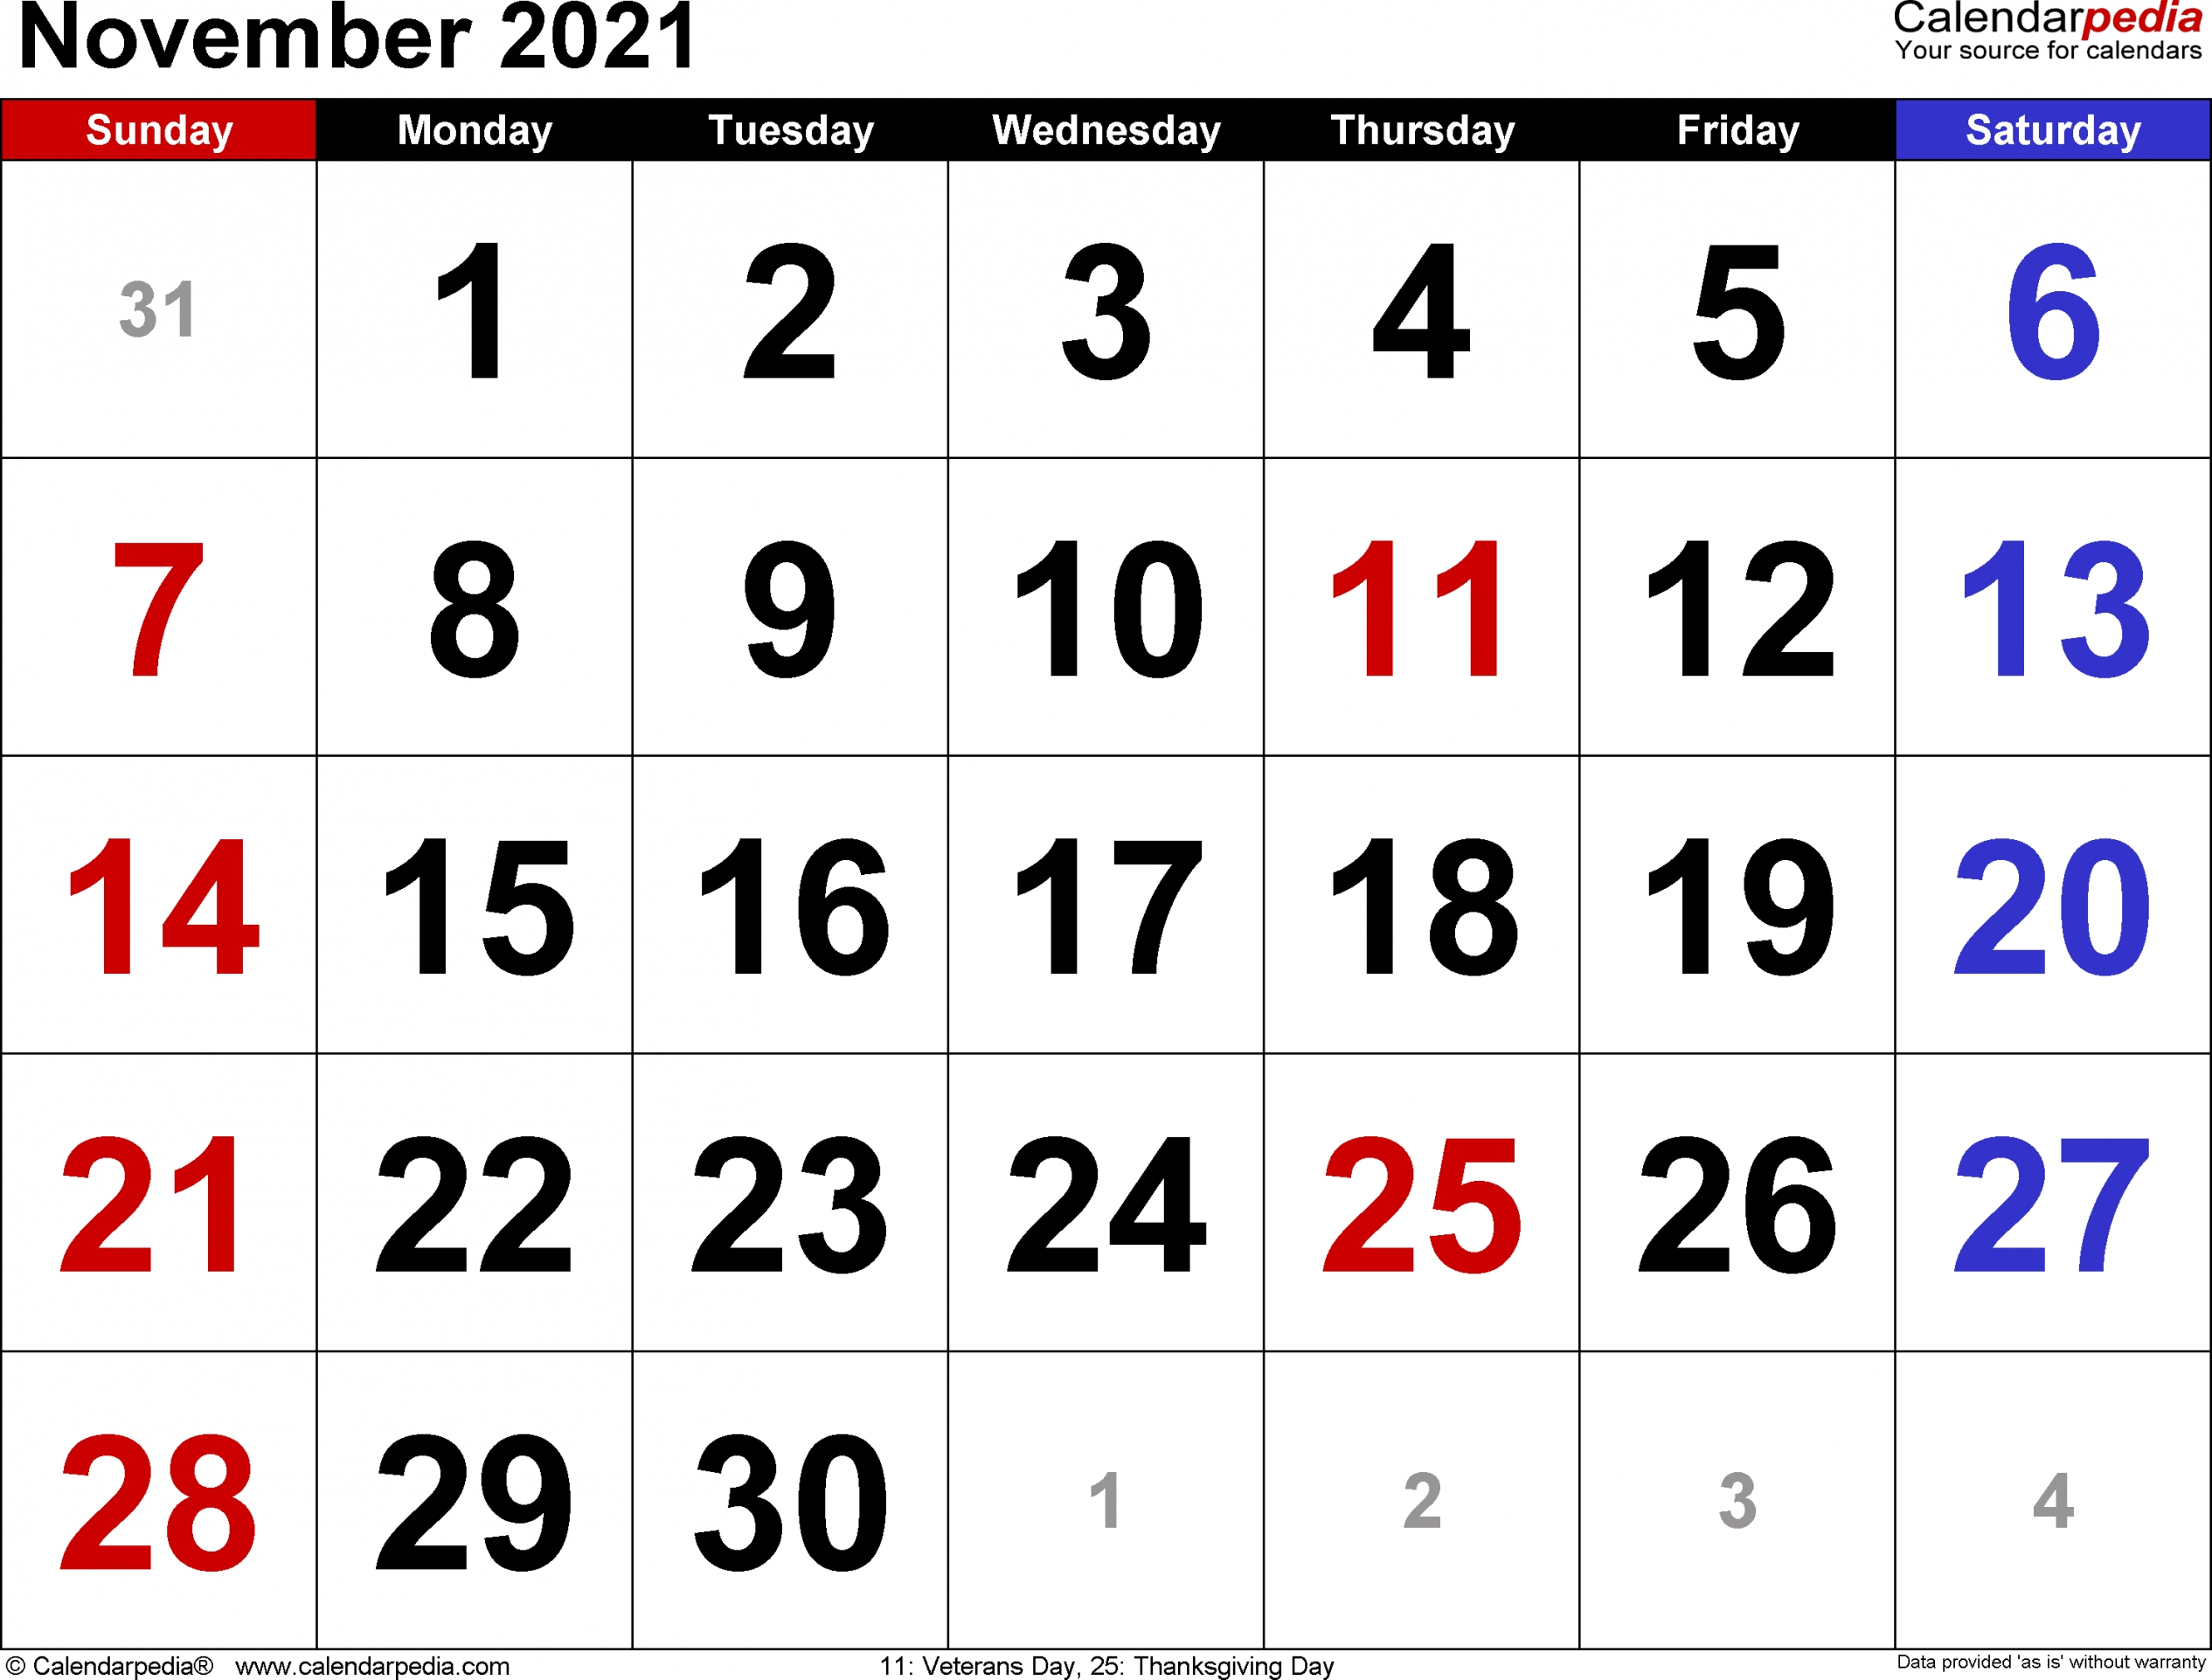 2021 November Calendar Printable | Free Letter Templates November 2021 Calendar Template